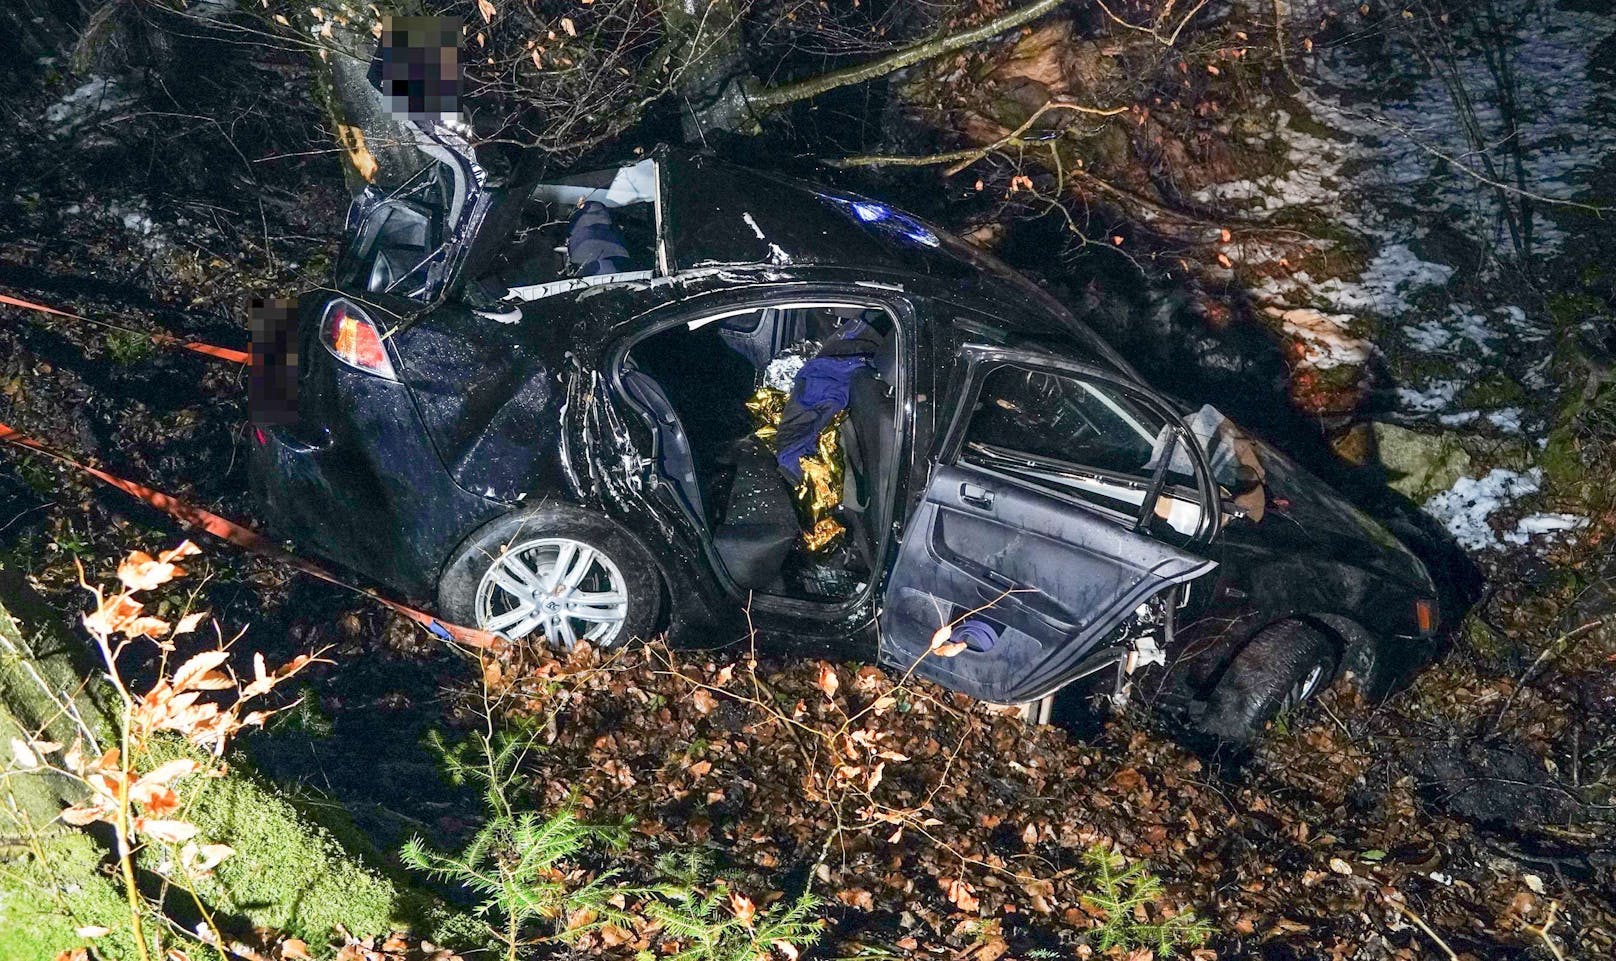 Die Einsatzkräfte wurden Sonntagfrüh zu einem Verkehrsunfall bei St. Leonhard am Walde gerufen. Ein Auto mit fünf Insassen war von der Straße abgekommen und in einen Wald gestürzt – alle Personen wurden in ein Spital eingeliefert.